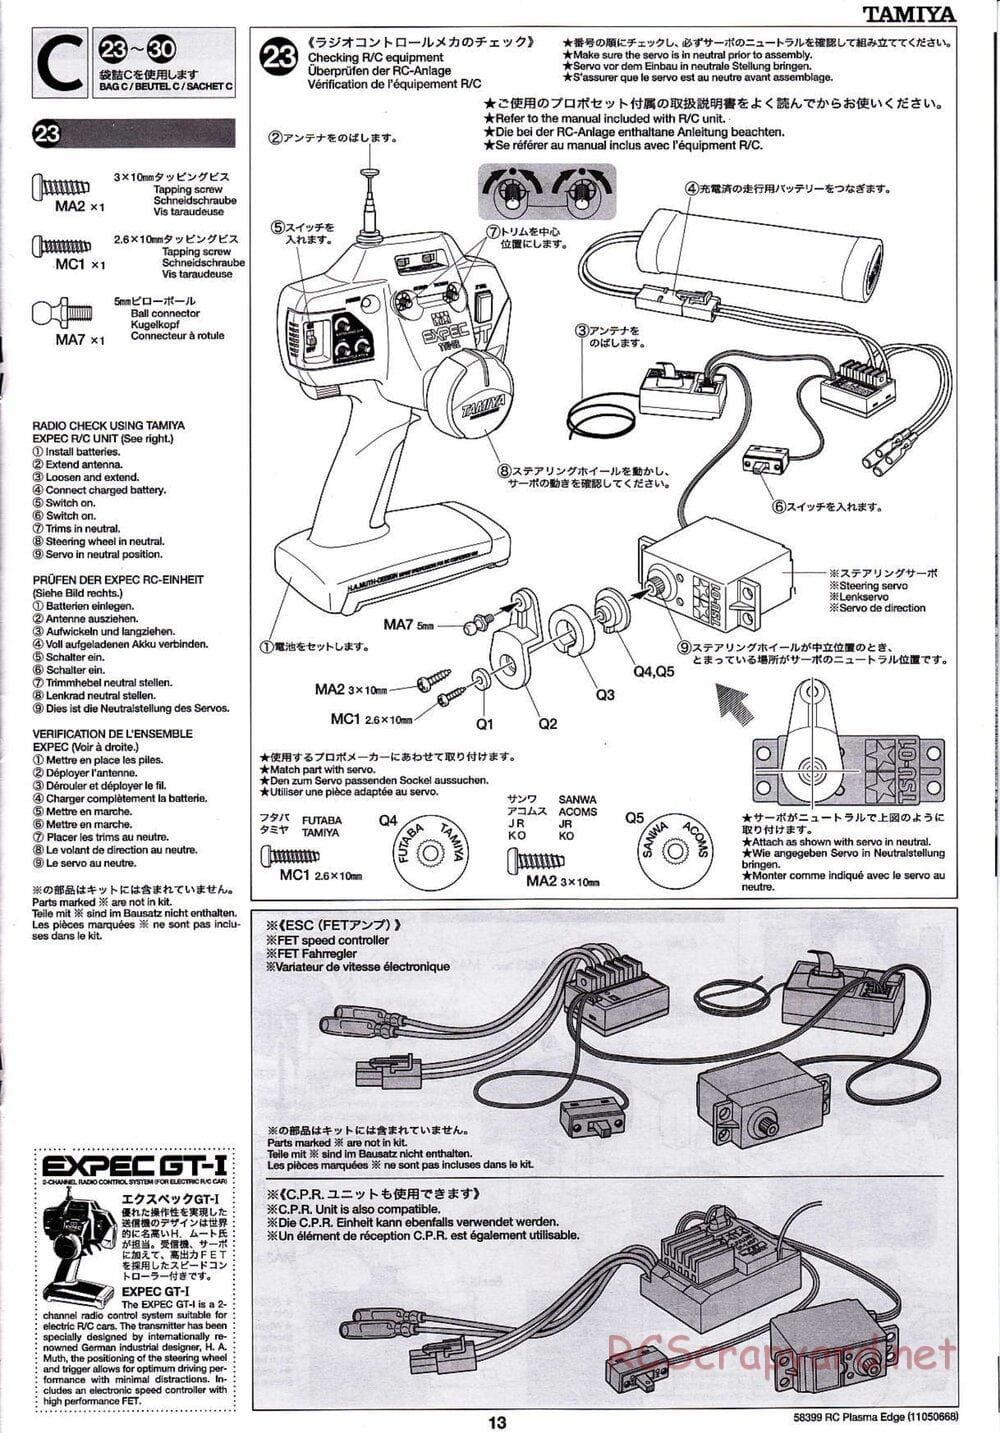 Tamiya - Plasma Edge Chassis - Manual - Page 13